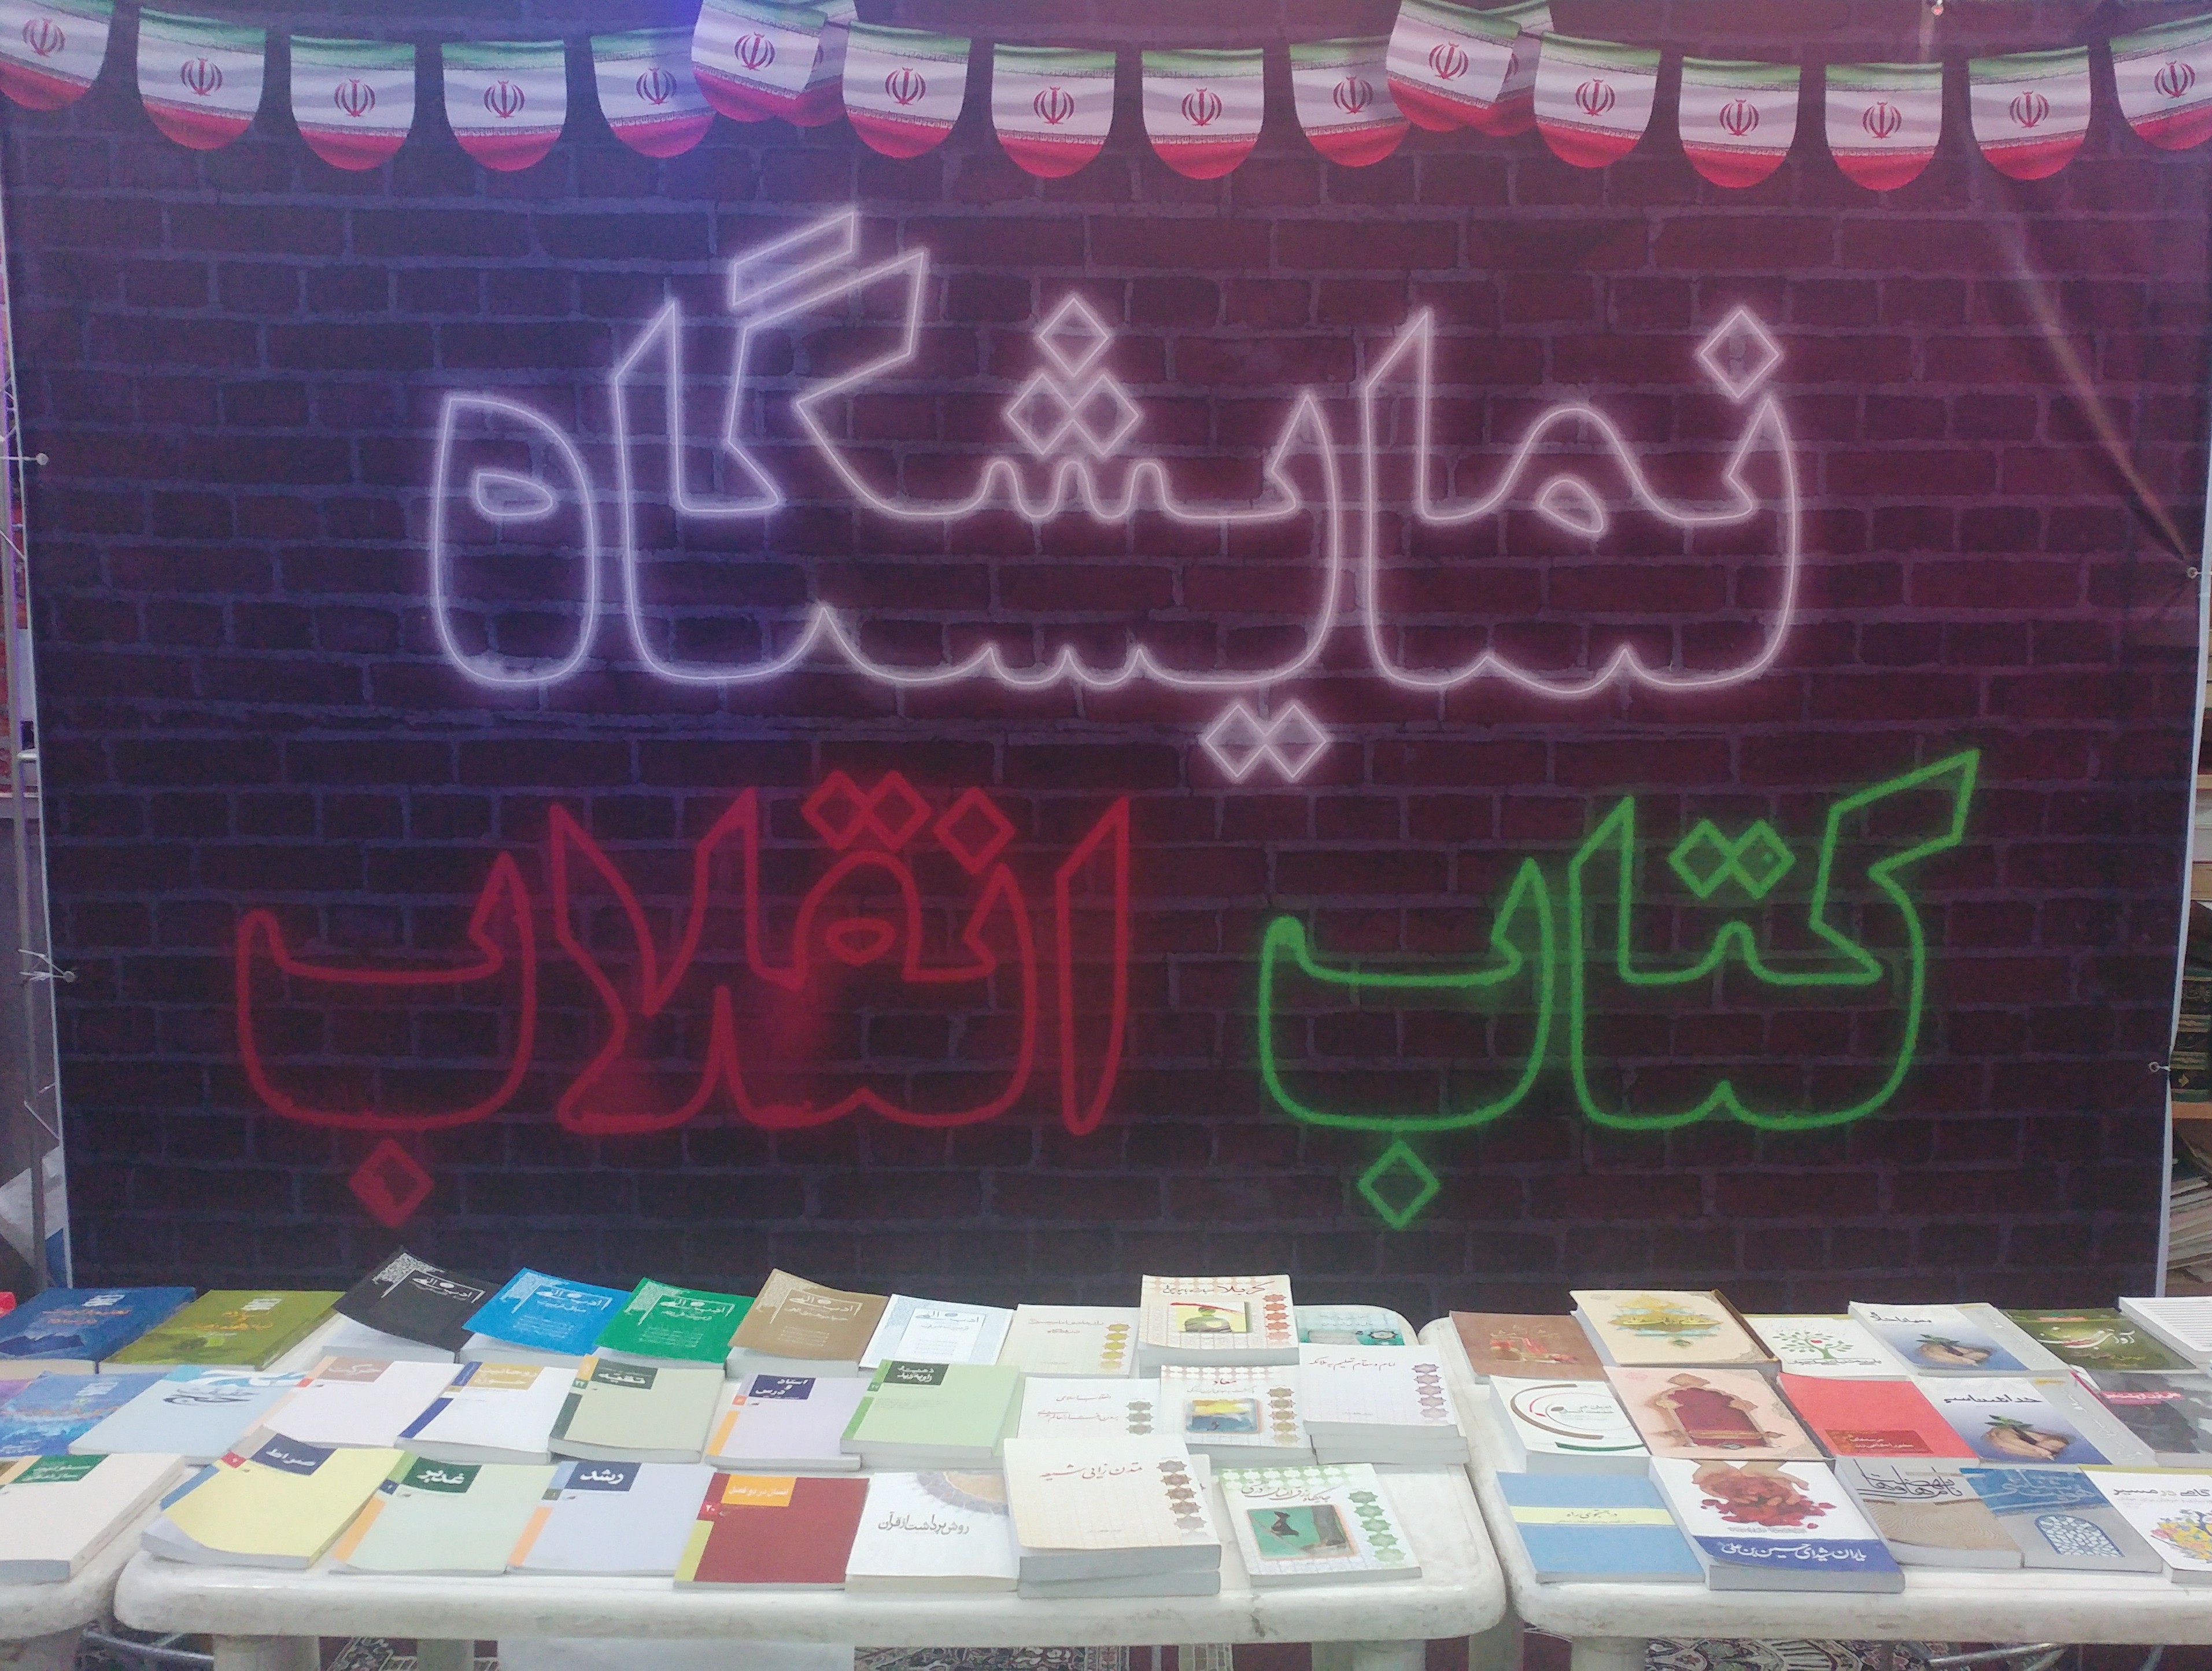 برگزاری نمایشگاه کتاب به مناسبت سالگرد پیروزی انقلاب اسلامی